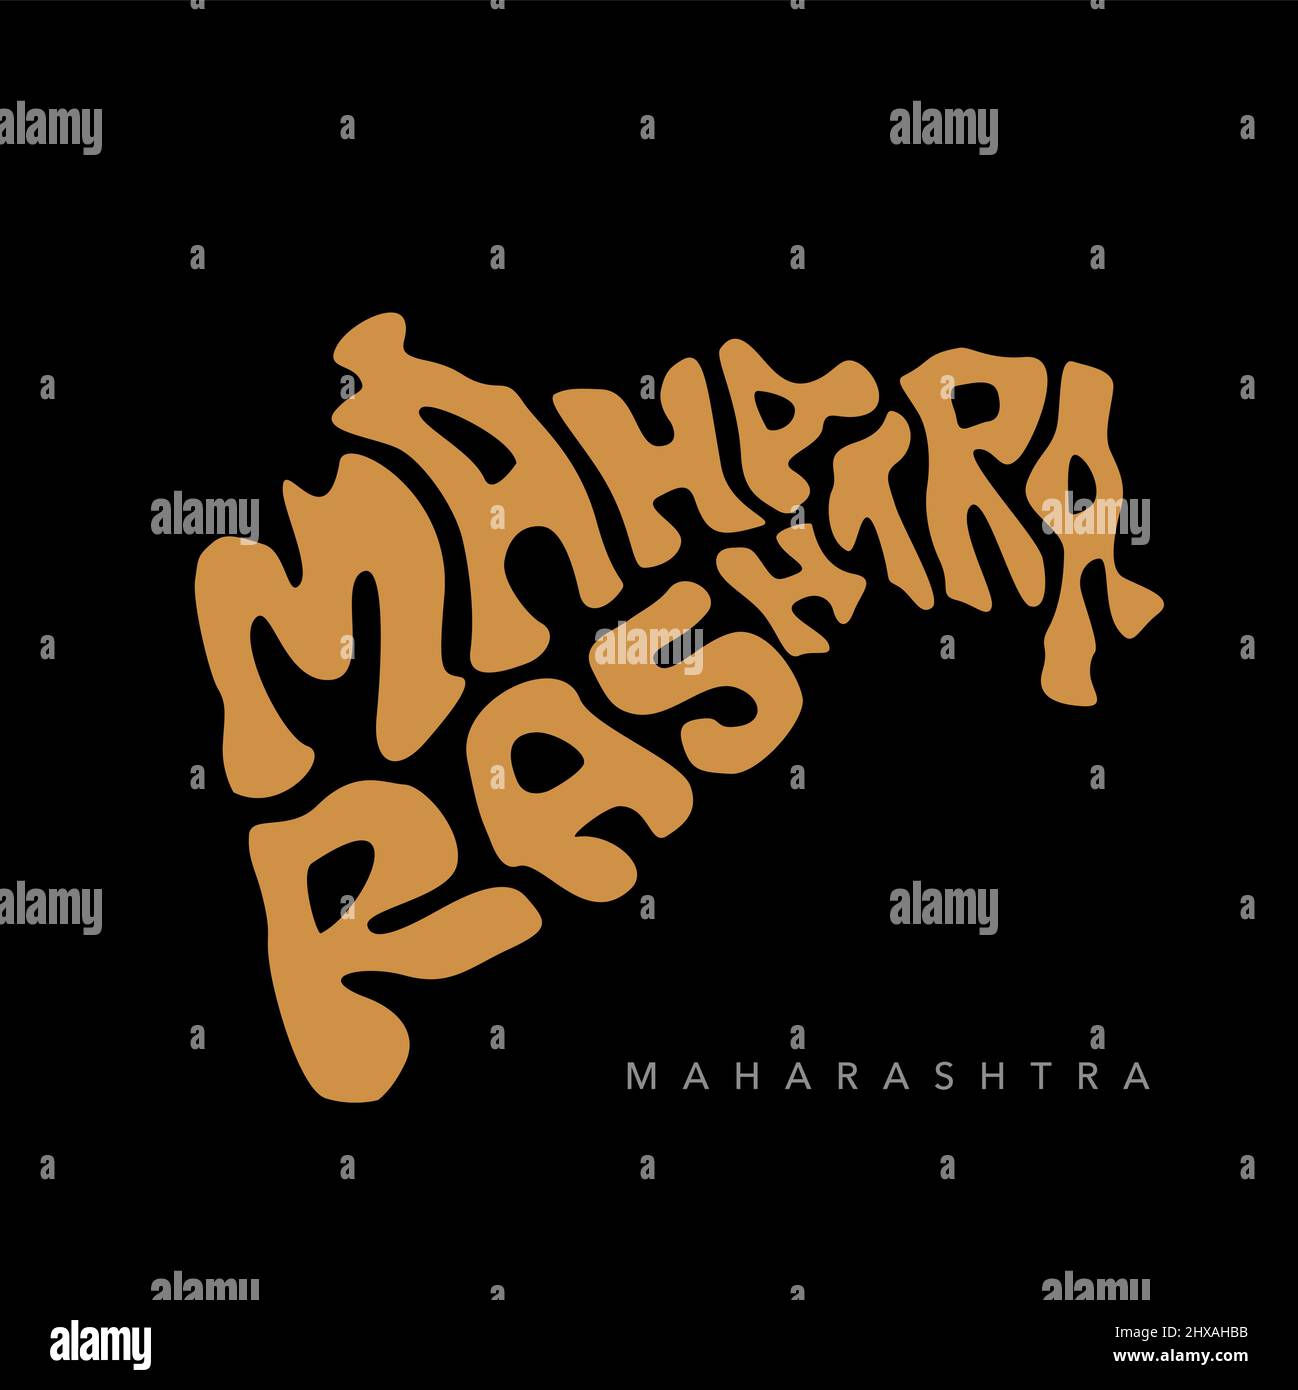 Lettrage de la carte d'état de Maharashtra en anglais, en couleur dorée. Typographie de la carte Maharashtra. Illustration de Vecteur